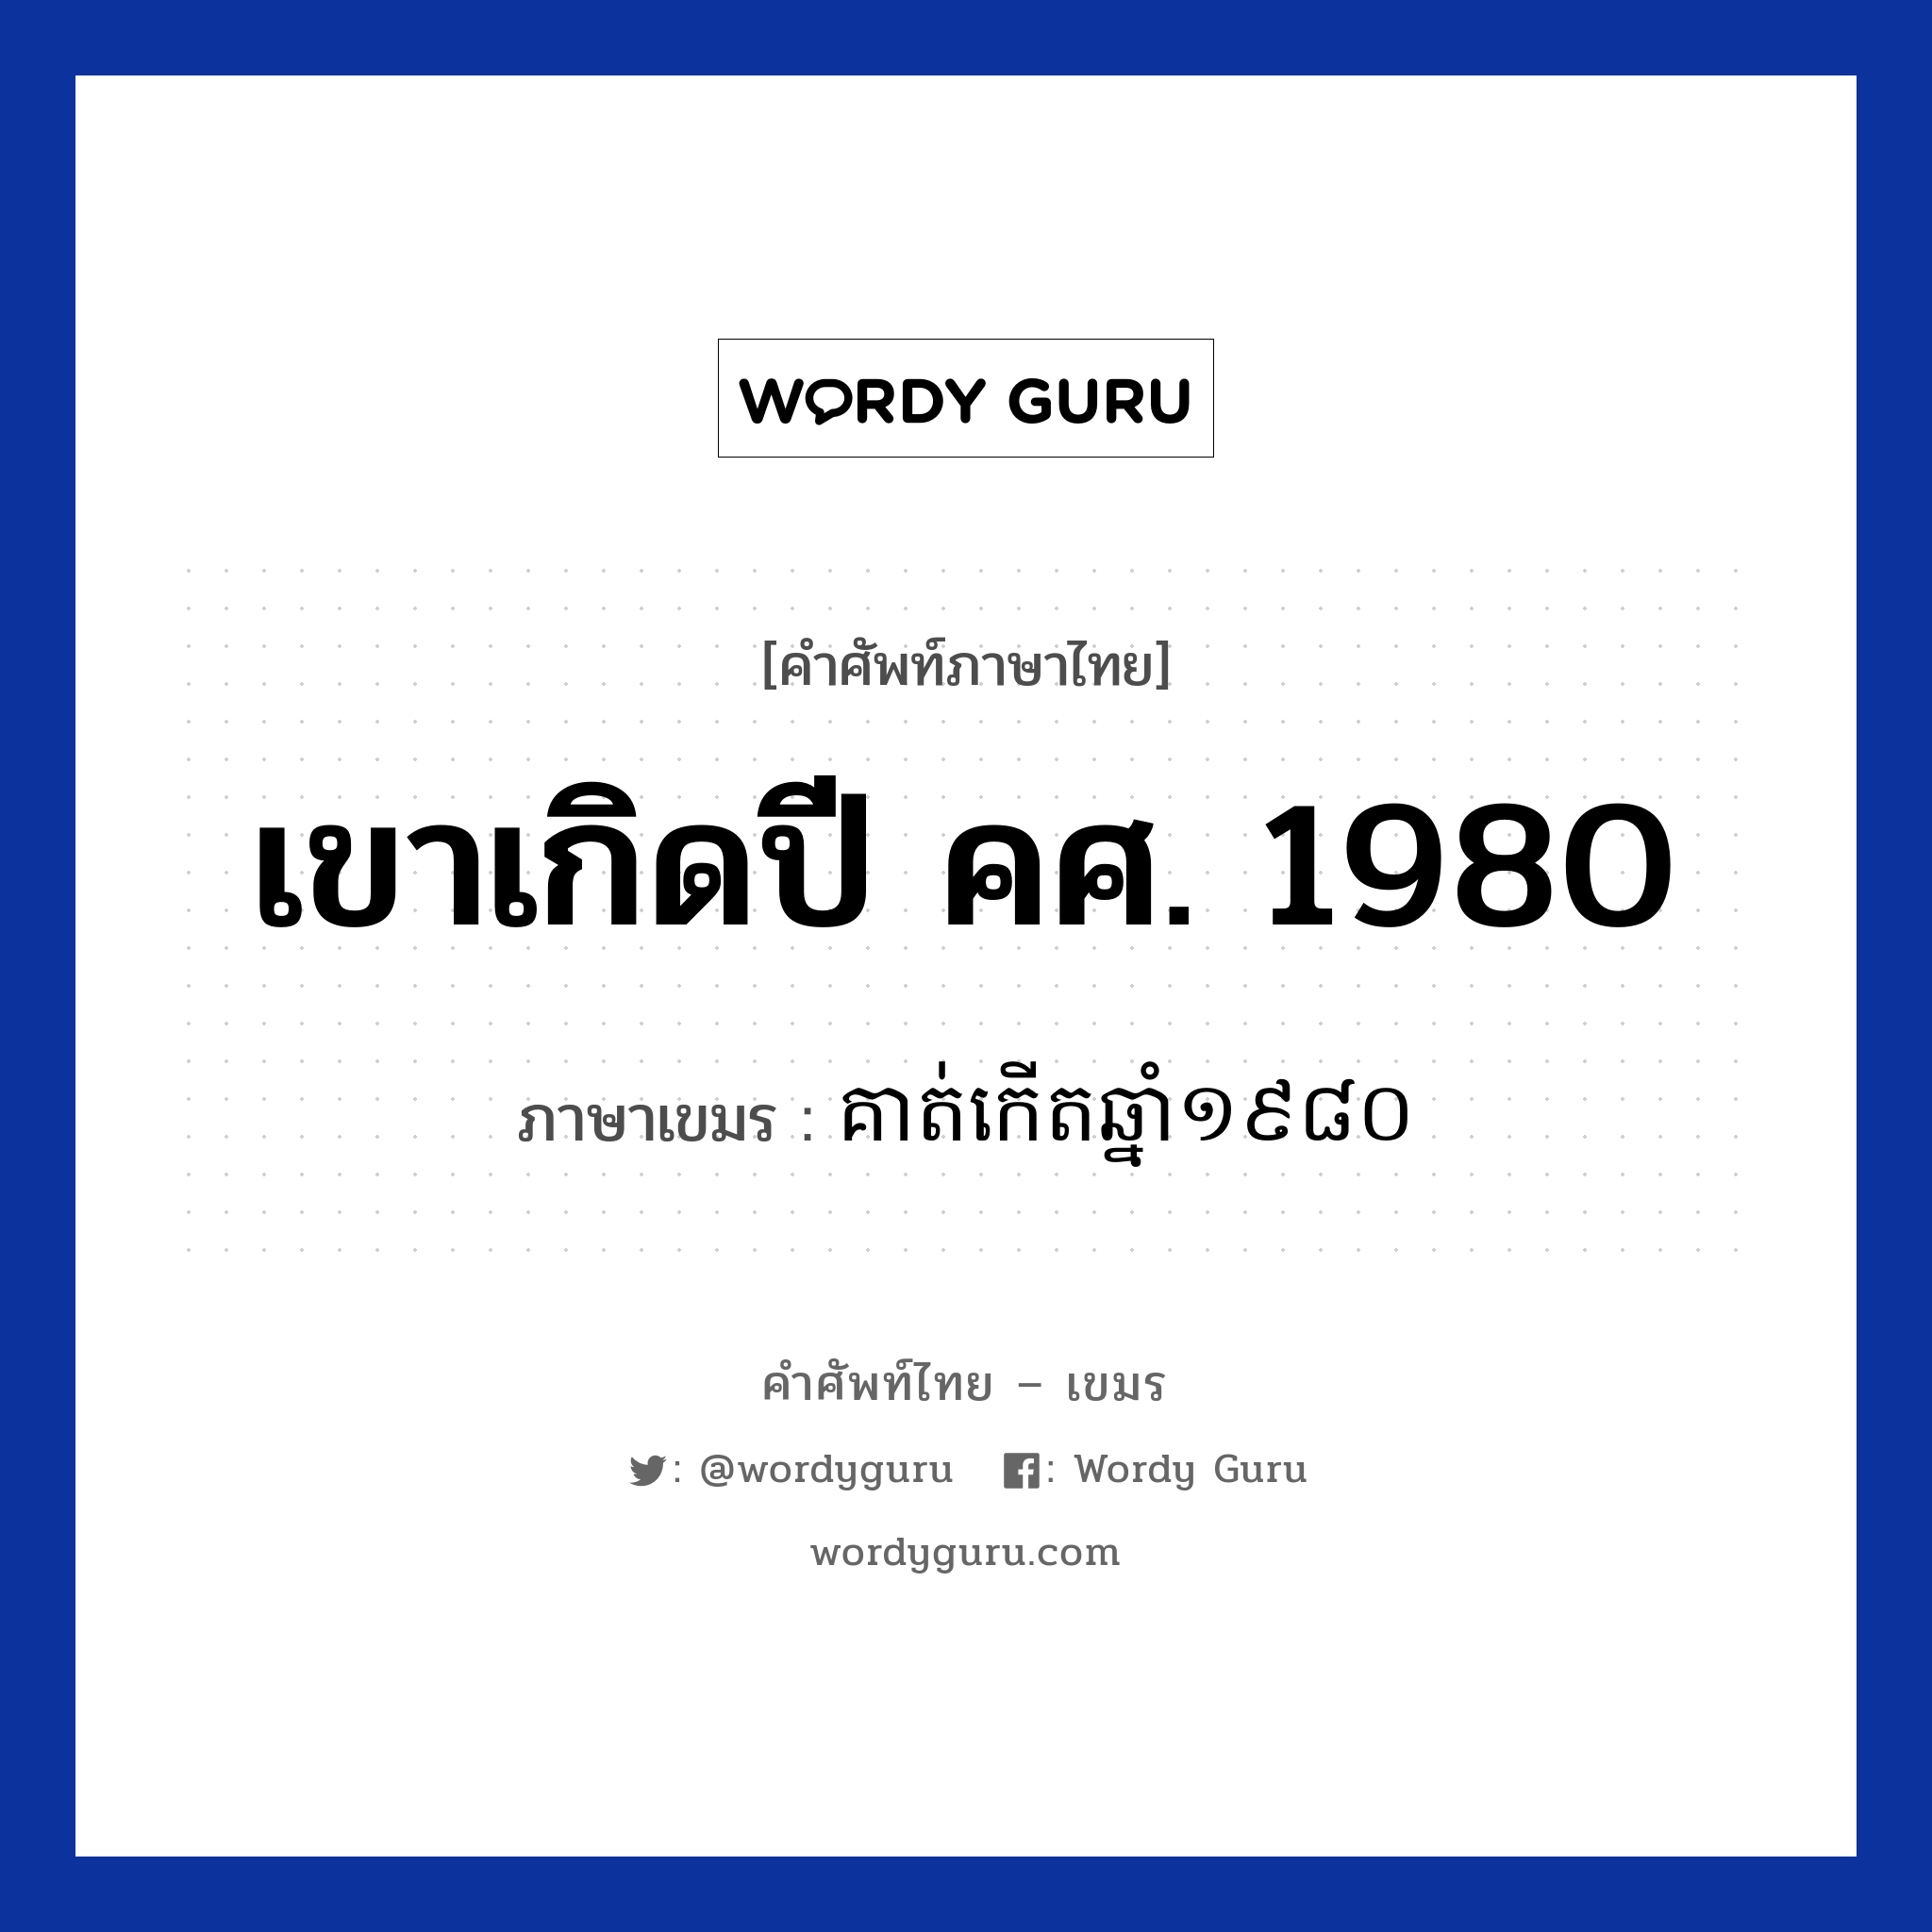 គាត់កេីតឆ្នាំ​​១៩៨០ ภาษาไทย?, คำศัพท์ภาษาไทย - เขมร គាត់កេីតឆ្នាំ​​១៩៨០ ภาษาเขมร เขาเกิดปี คศ. 1980 หมวด บทสนทนาเกี่ยวกับวัน เวลา Kout kert chnam mouy poun brambey roy peet sib หมวด บทสนทนาเกี่ยวกับวัน เวลา